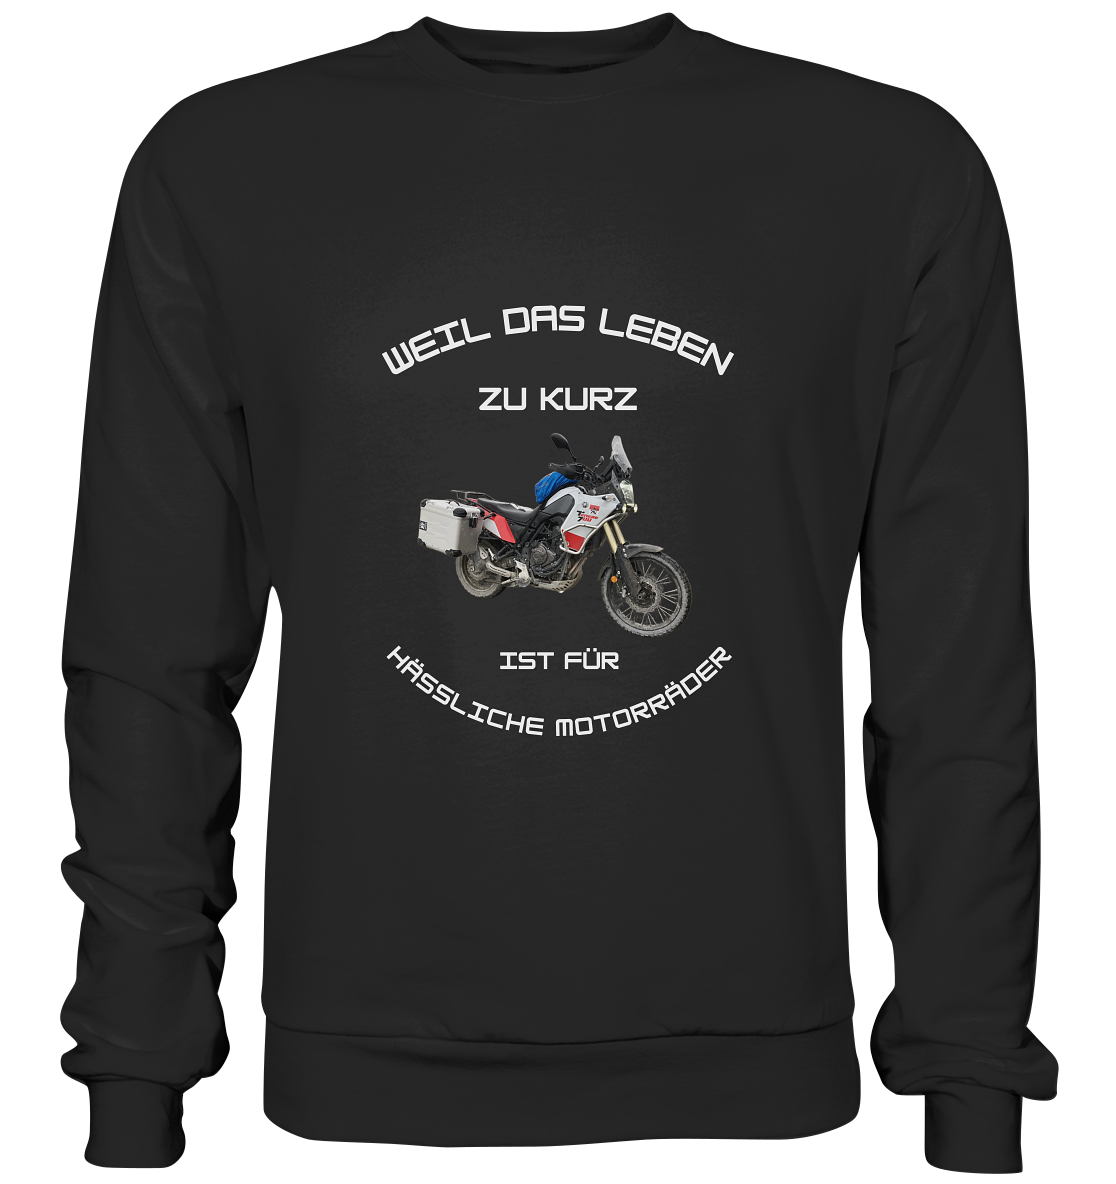 "Weil das Leben zu kurz ist für hässliche Motorräder" _ für Tim | individuelles Sweatshirt mit Foto und Motorrad-Spruch in hellem Design